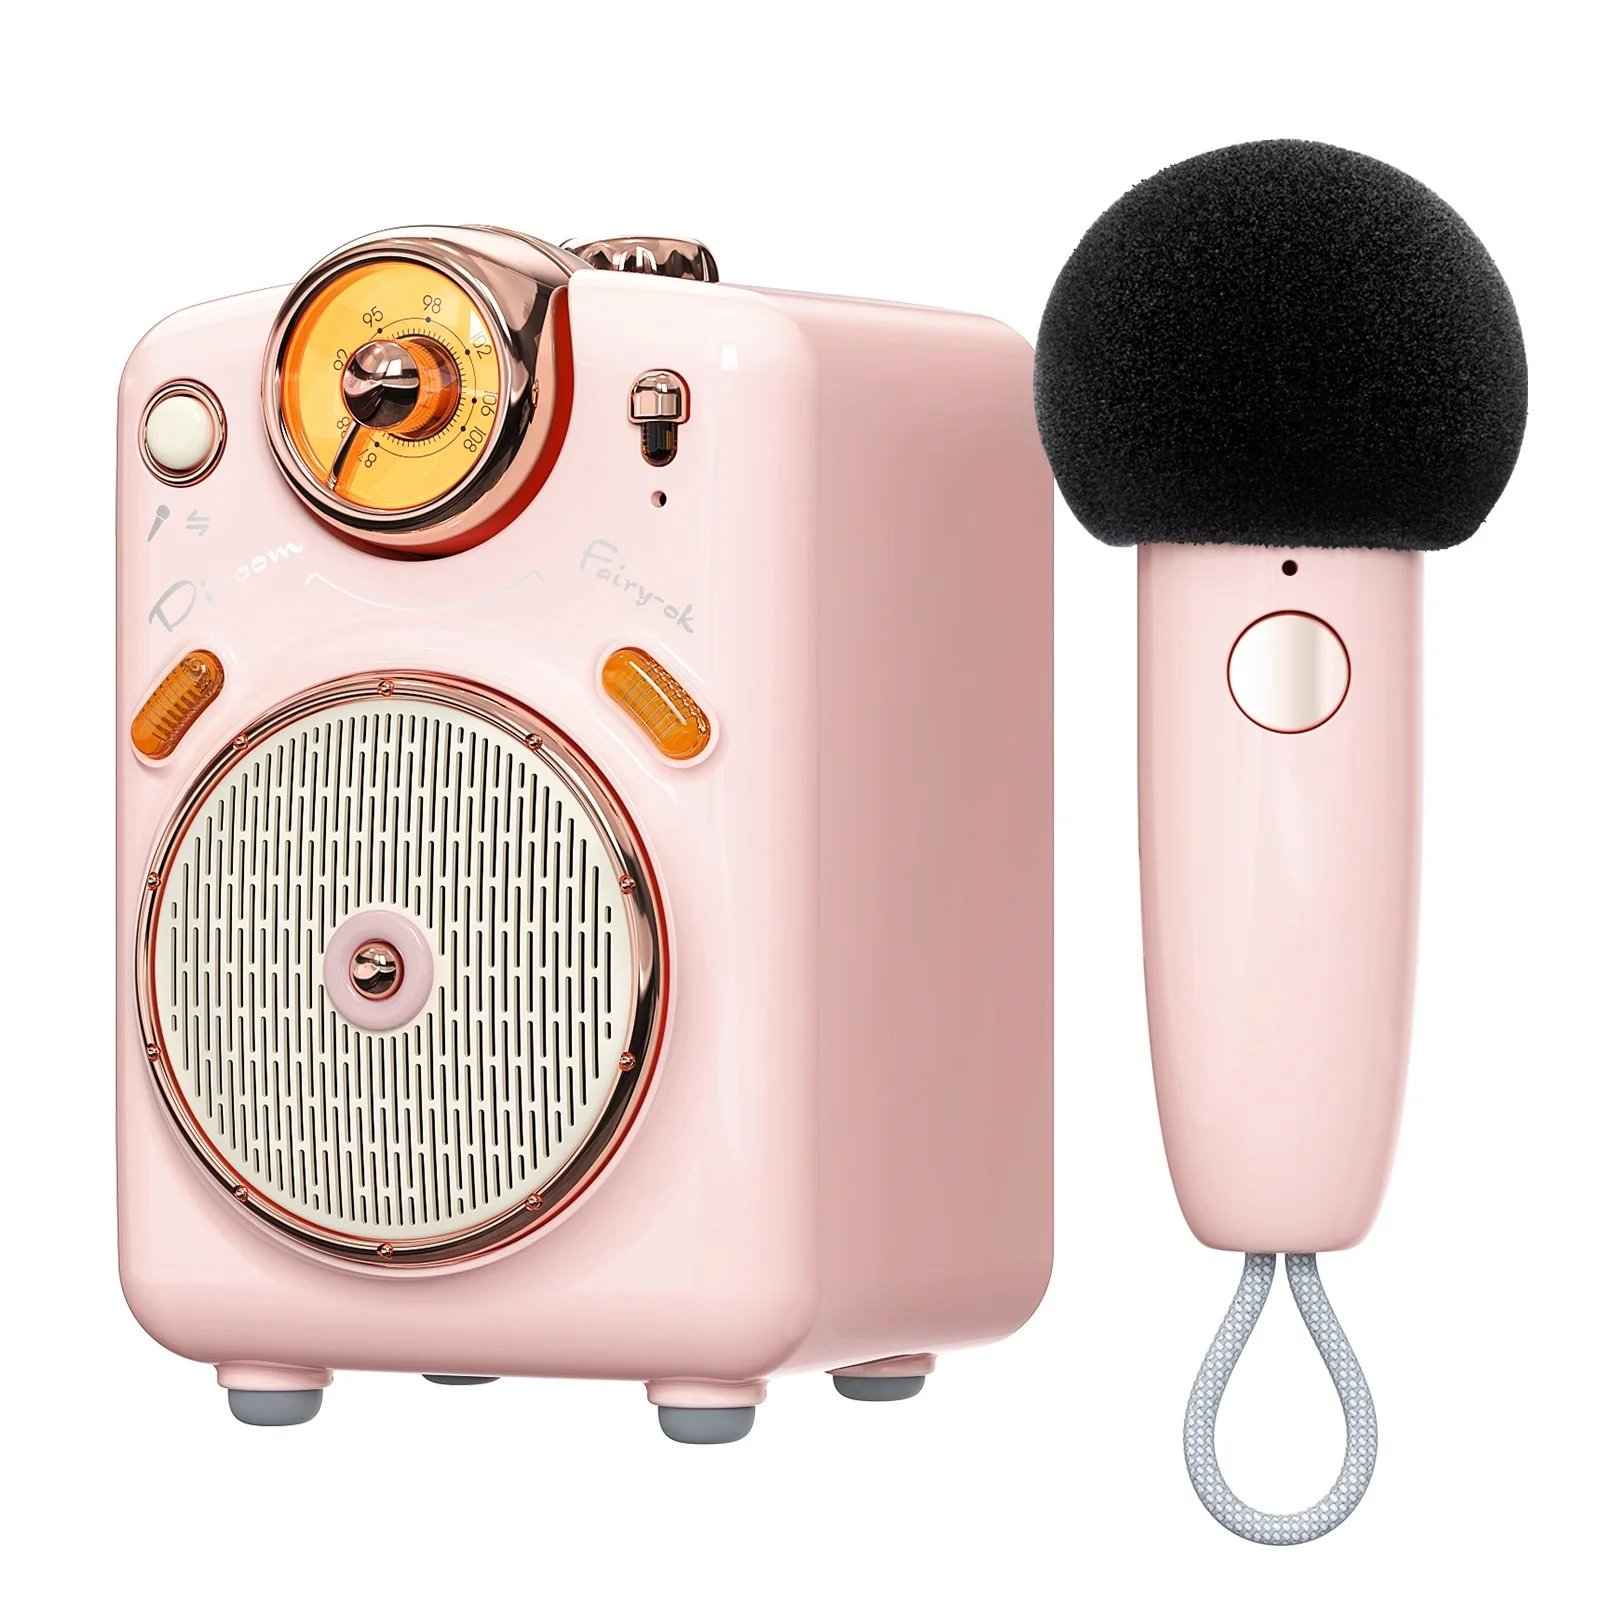 

2023 портативная Bluetooth-Колонка Fairy-OK с микрофоном, функцией караоке и голосовым изменением, FM-радио, TF-картой